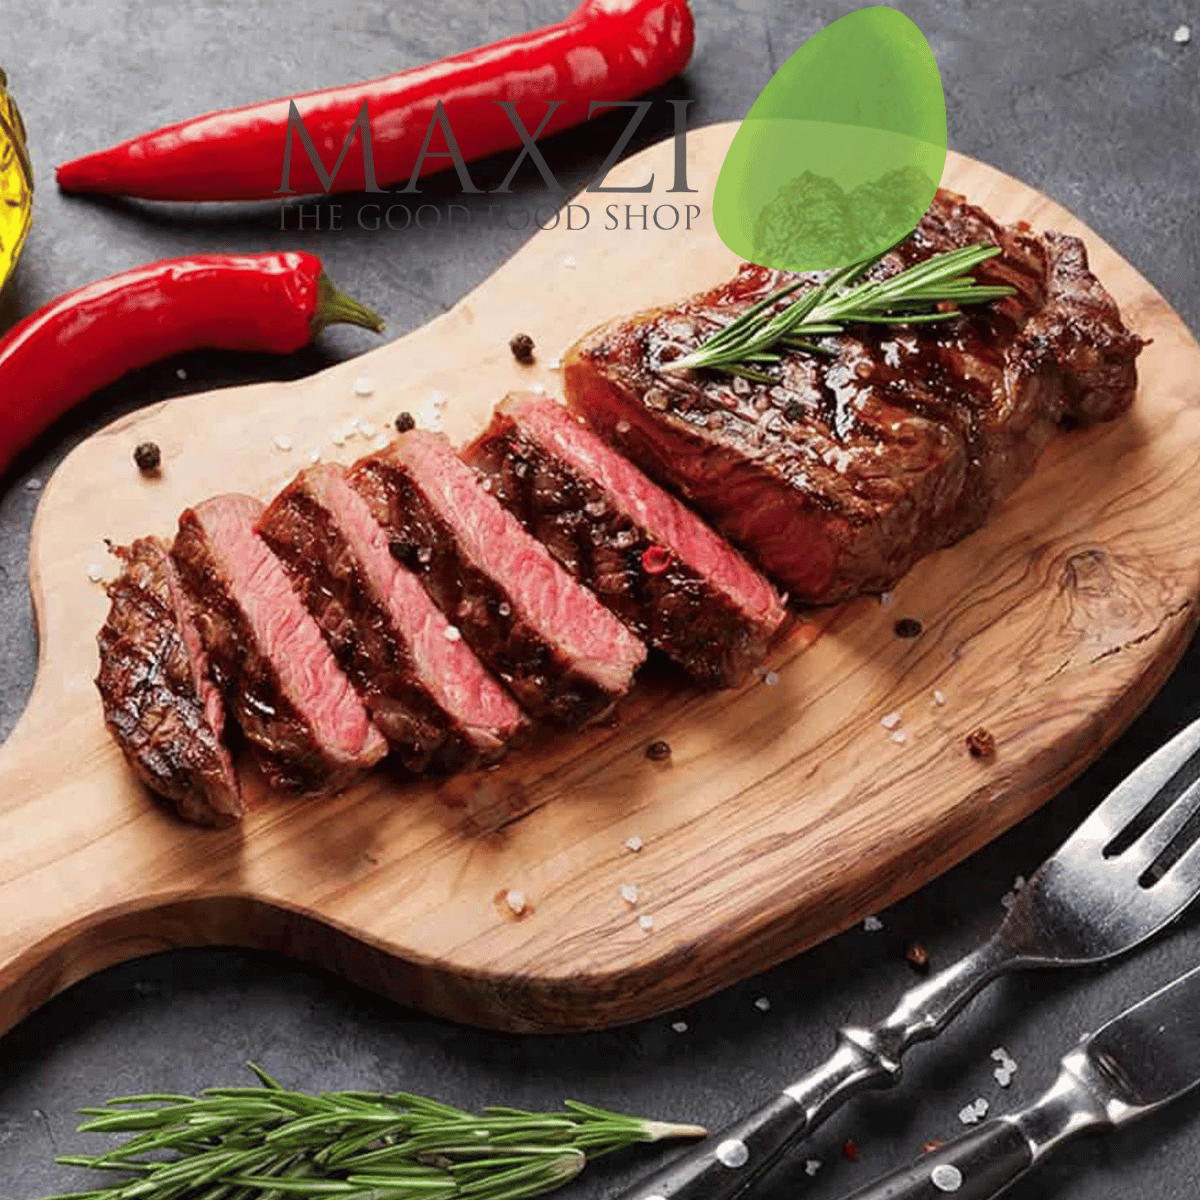 [BÁN CHẠY] Thịt bò Steak Thăn Ngoại Bò Úc Carne Meats Raw - Maxzi